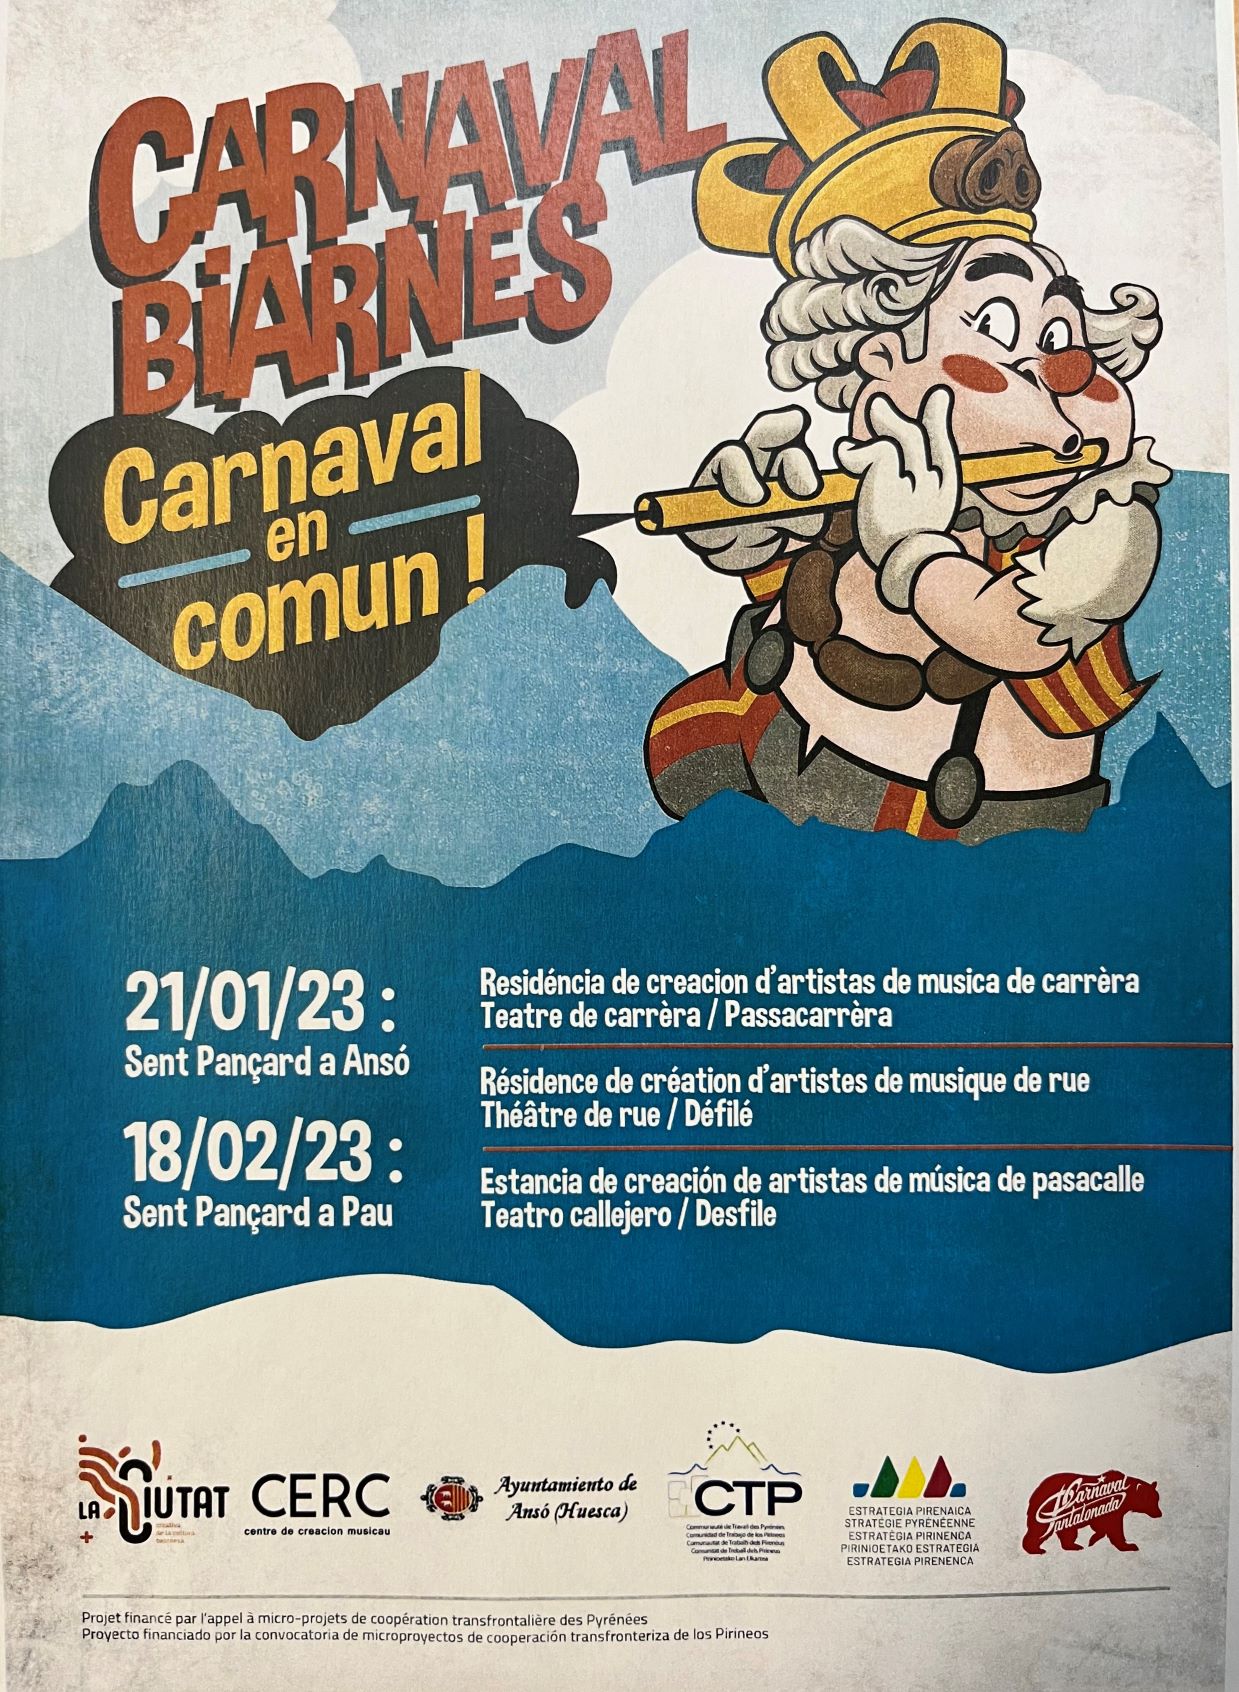 El Carnaval Biarns comenzar el da 21 de enero en Ans